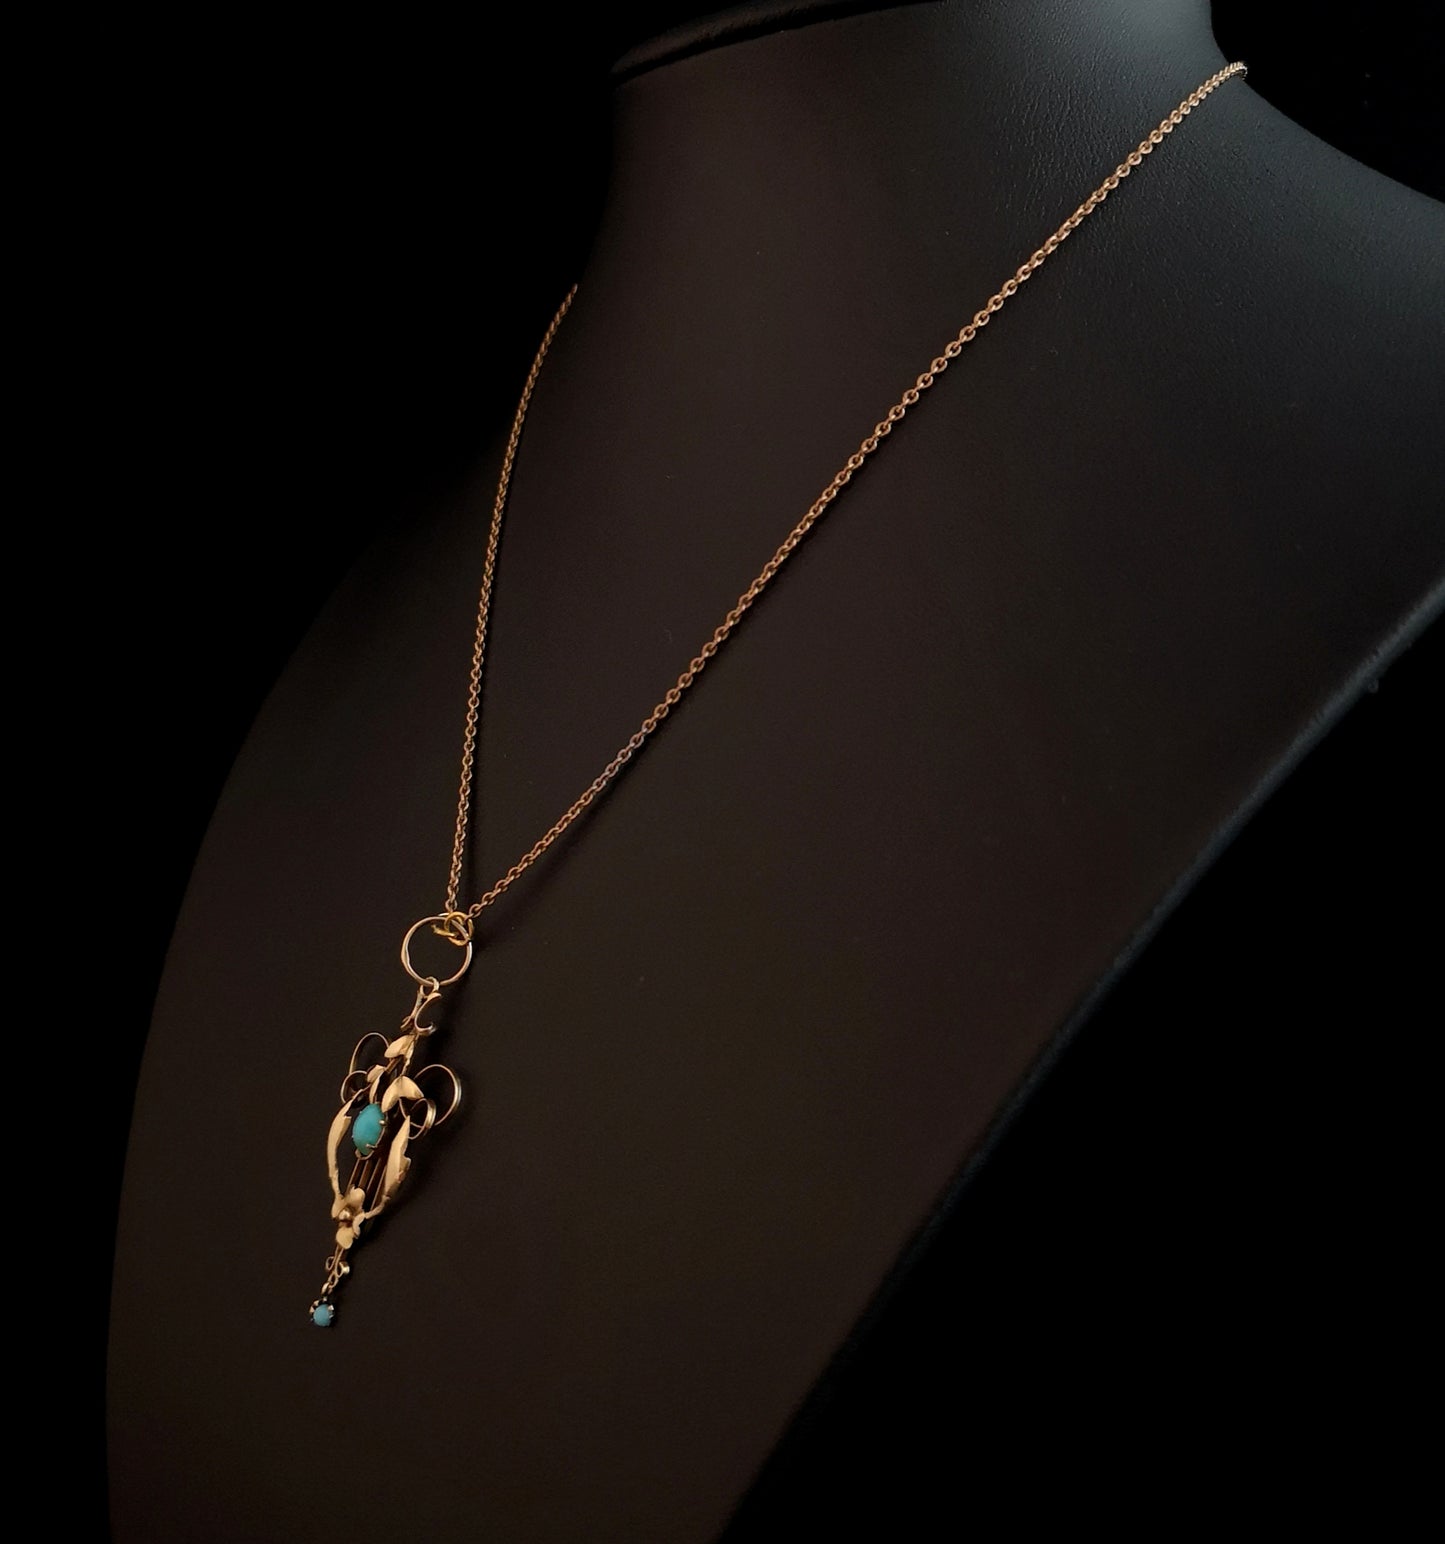 Art Nouveau turquoise lavalier pendant, 9ct gold necklace